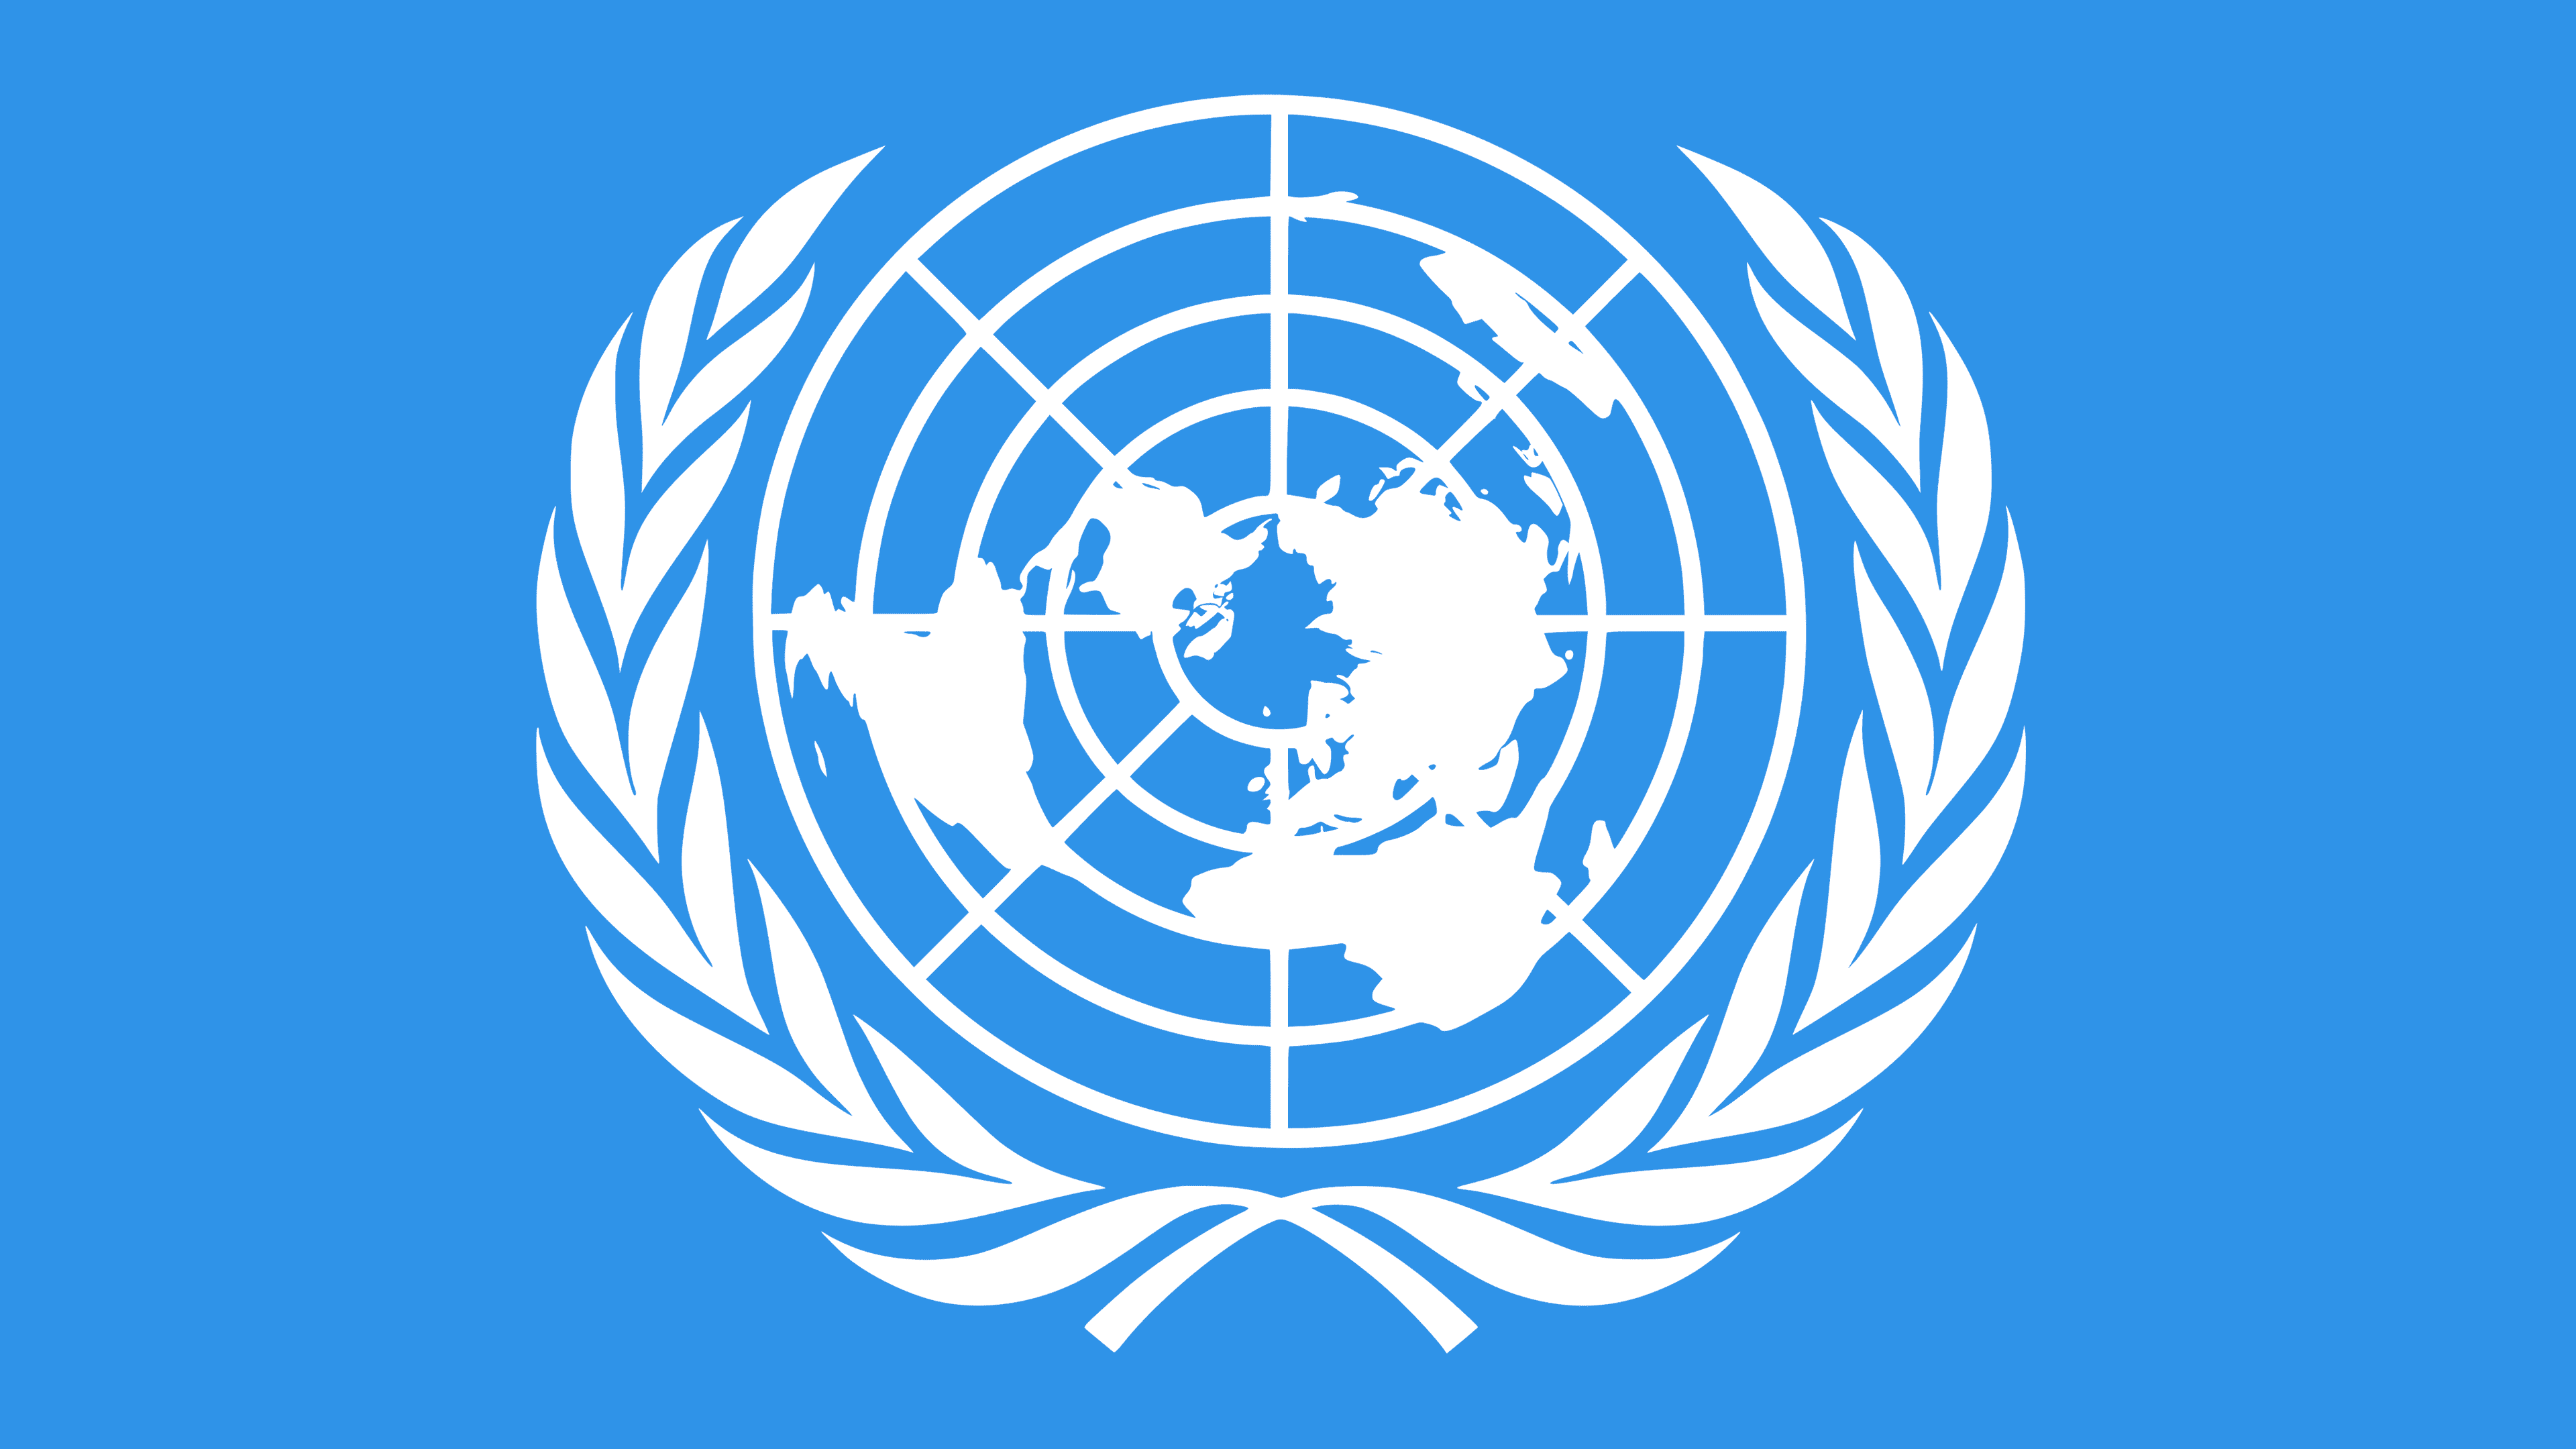 Logo Organizacji Narodów Zjednoczonych – biała grafika na błękitnym tle – pięć okręgów i mapa świata z biegunem północnym pośrodku. Wokół mapy biegną dwie gałązki oliwne. Logo symbolizuje misję ONZ: zapewnienie pokoju i bezpieczeństwa na całym świecie. 